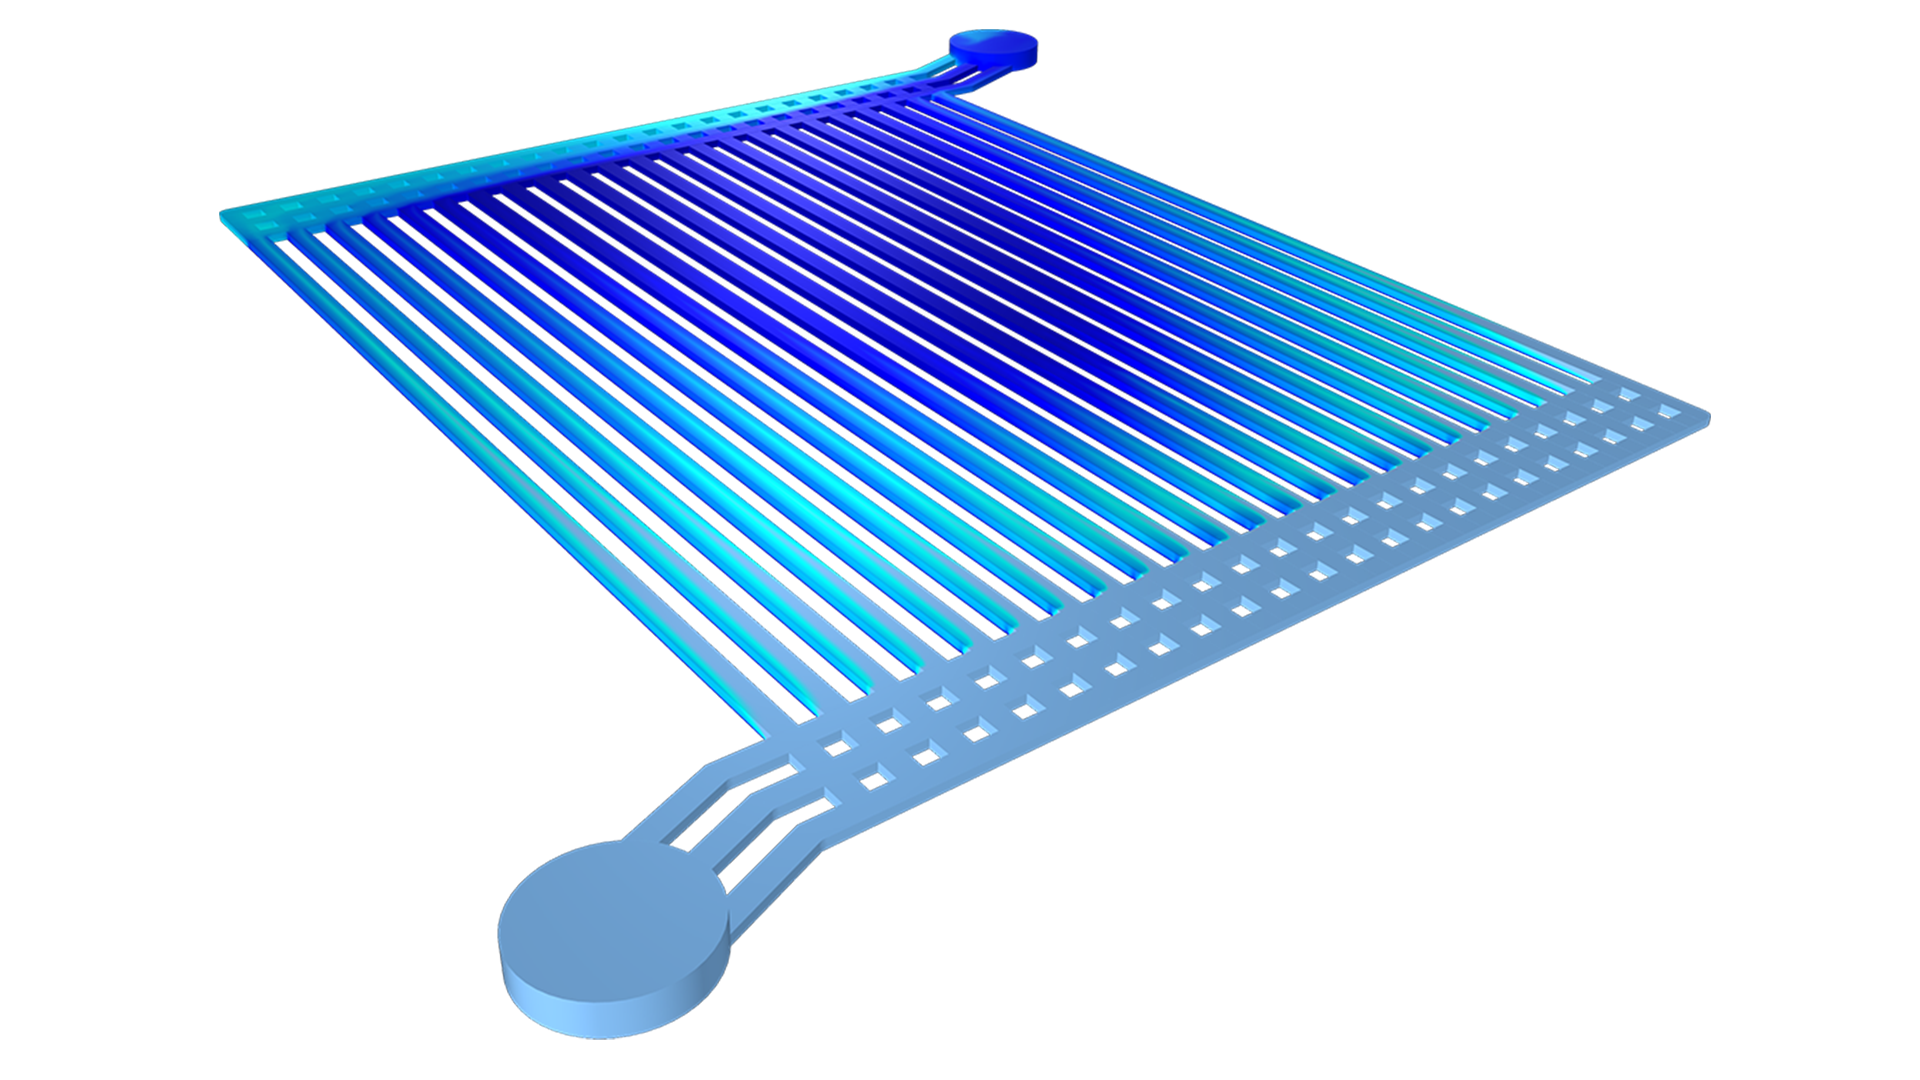 Modello di elettrolizzatore ad acqua con la frazione del volume di gas visualizzata in un gradiente di colore da blu scuro ad azzurro.